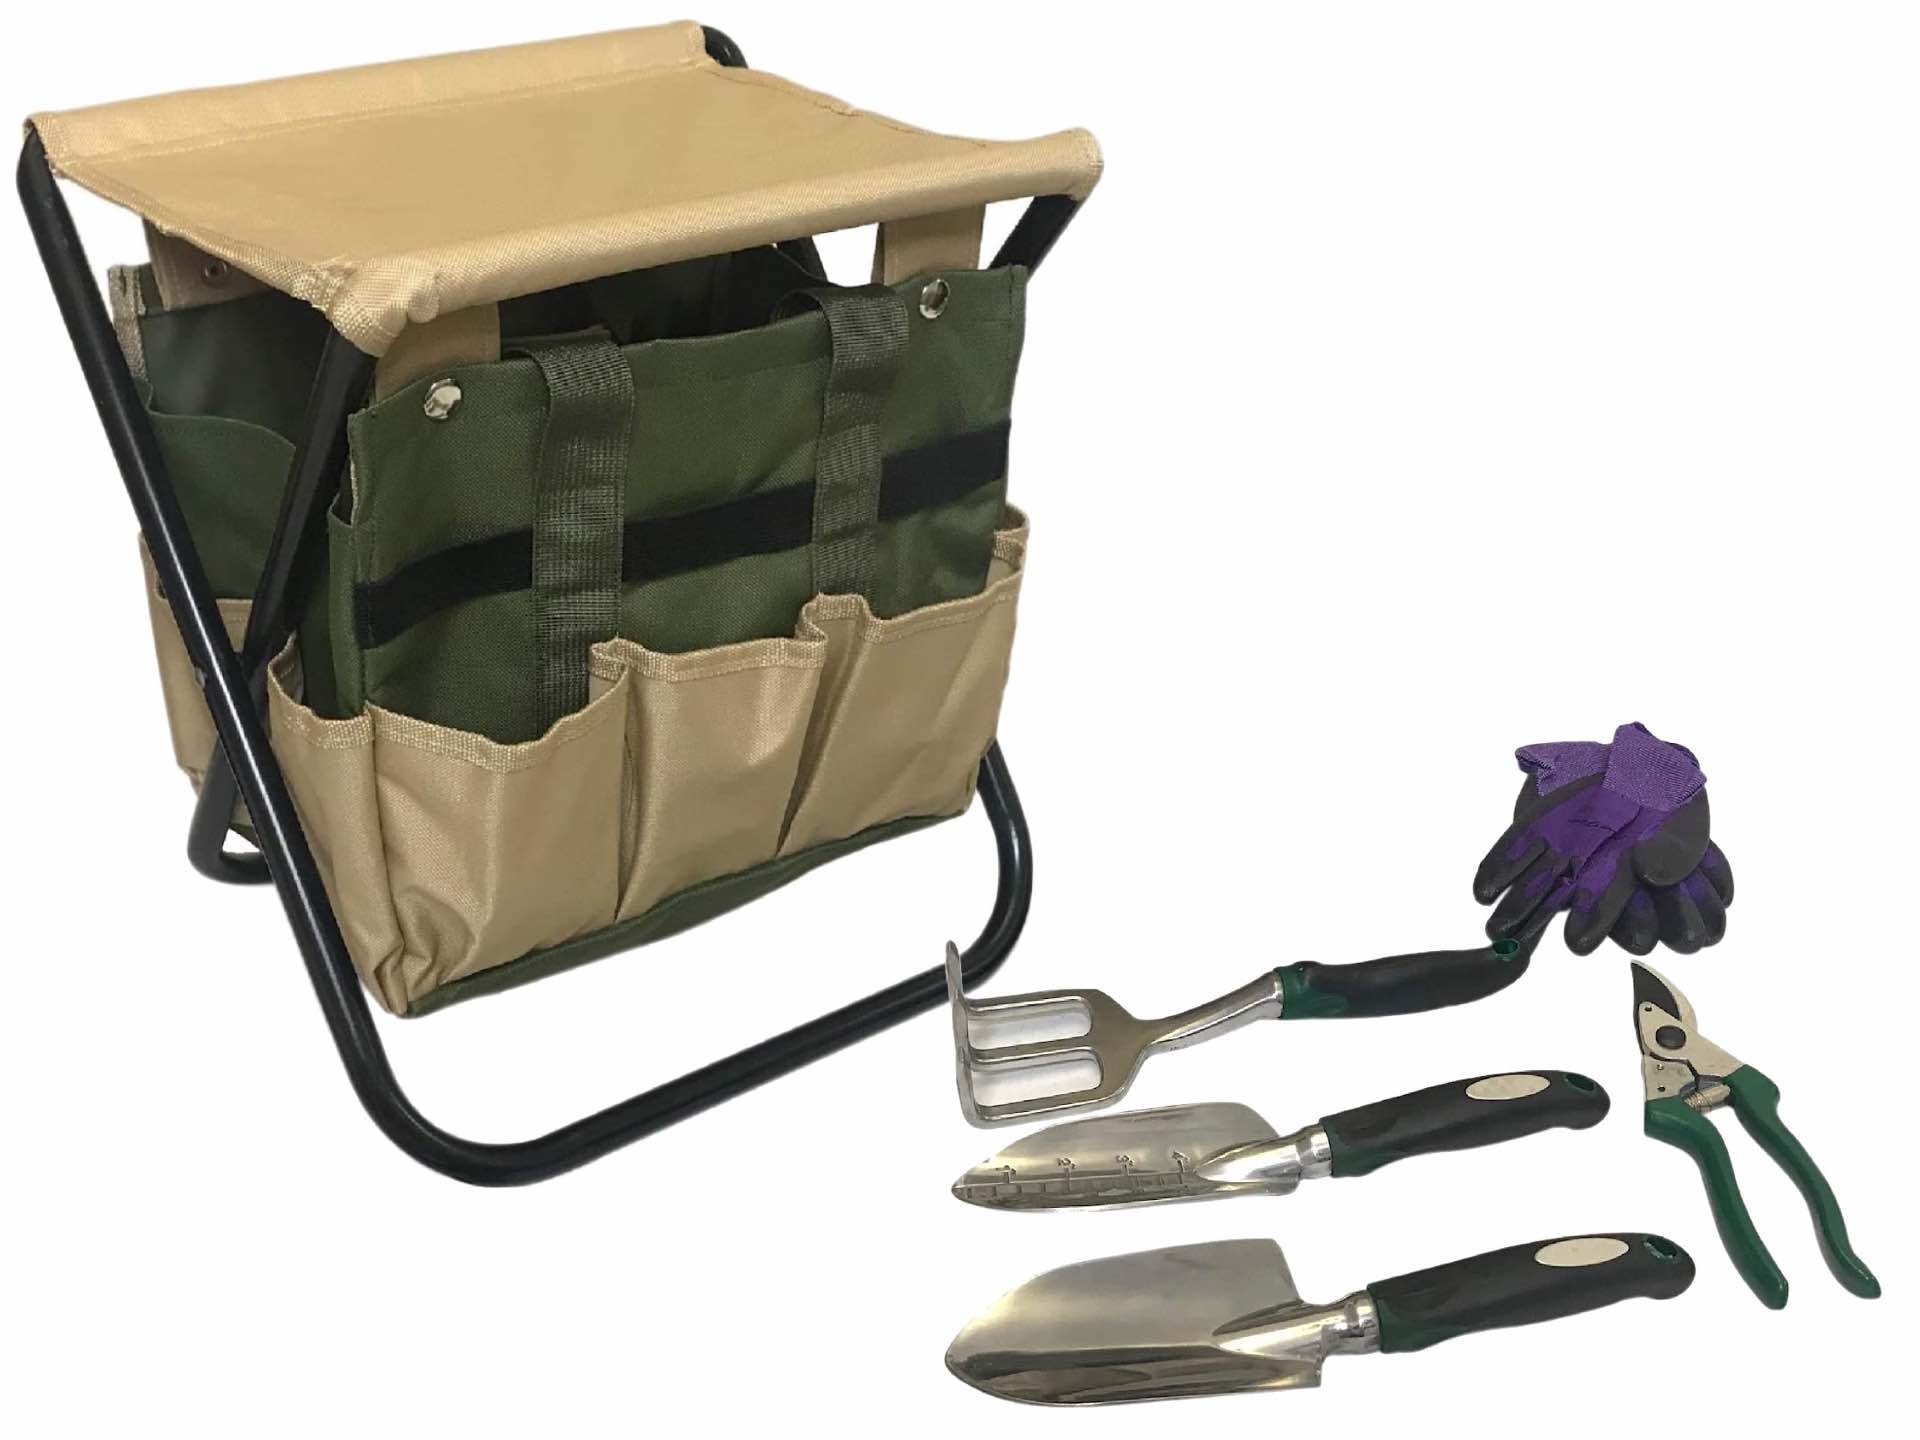 Gardening tool bag + stool set. ($26)